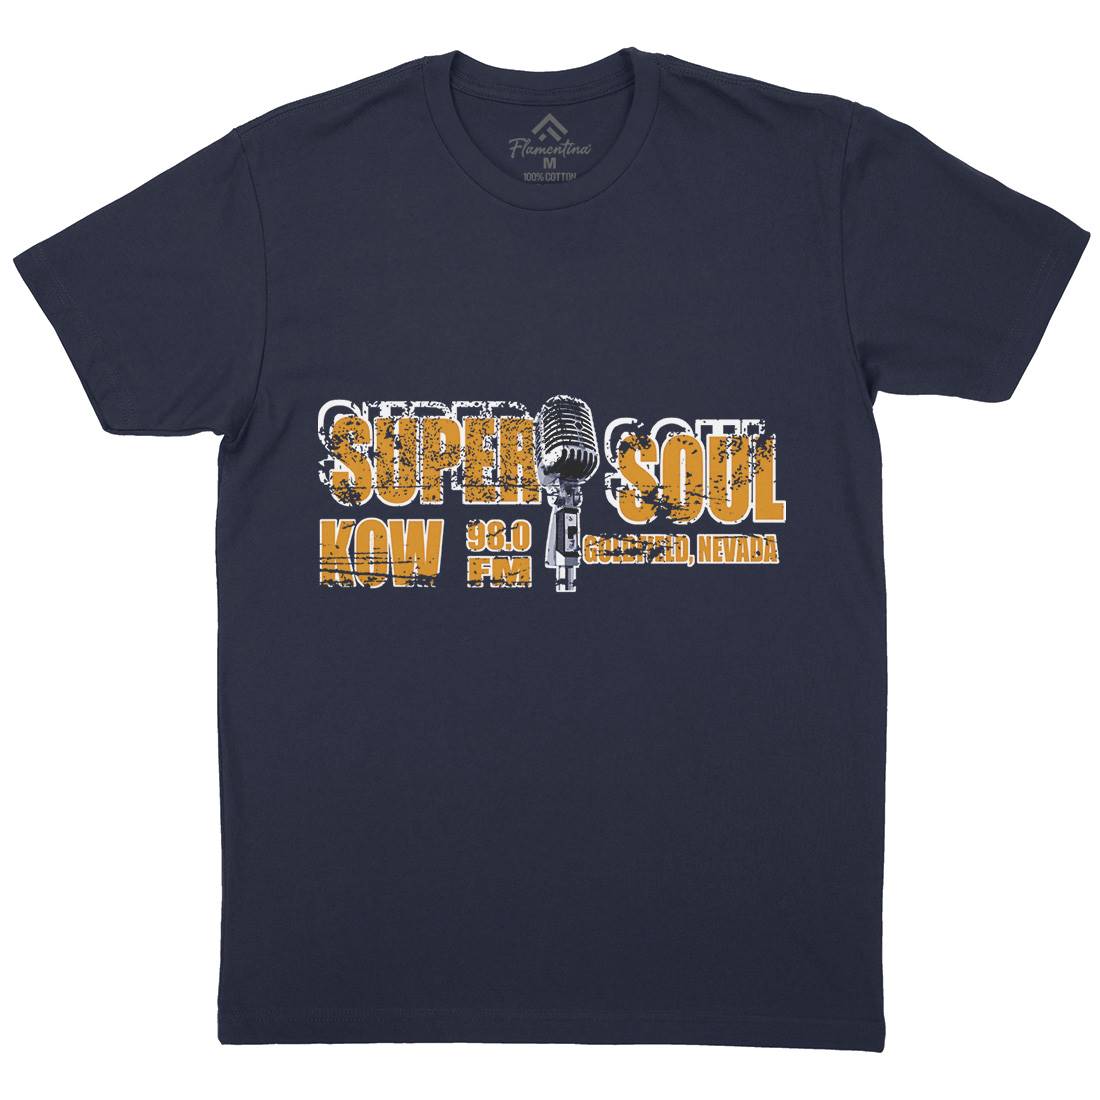 Super Soul Mens Crew Neck T-Shirt Music D392